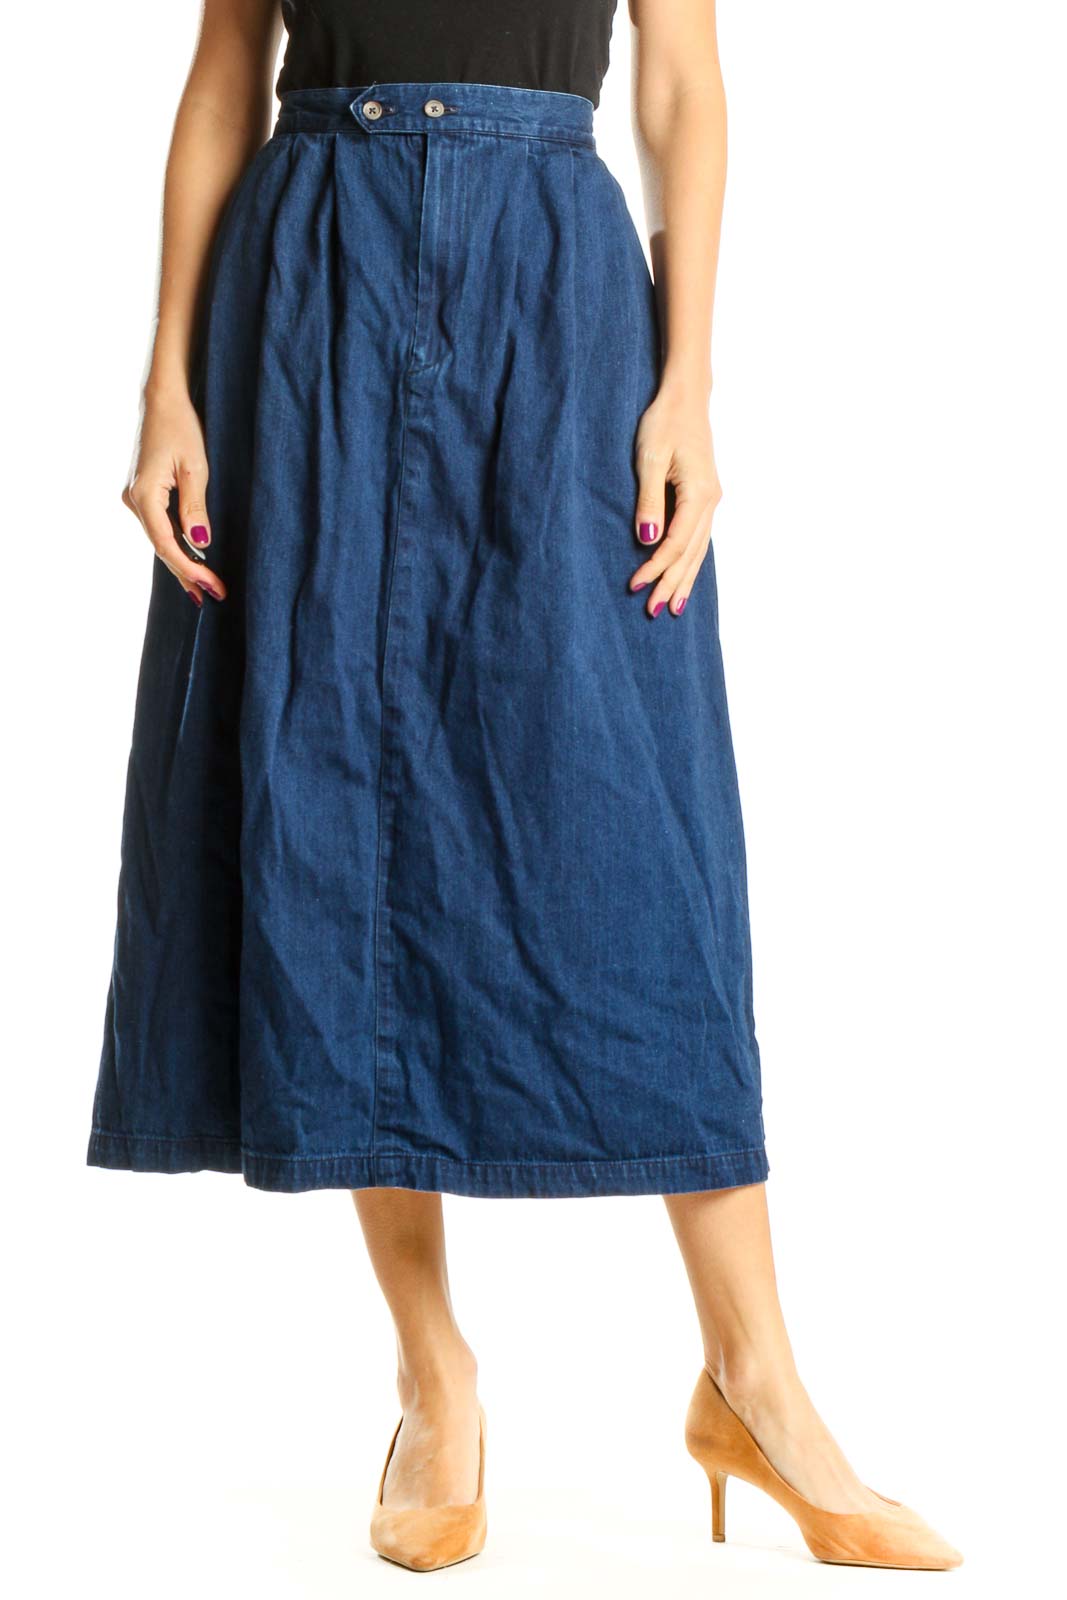 Blue Retro Denim A-Line Skirt Front